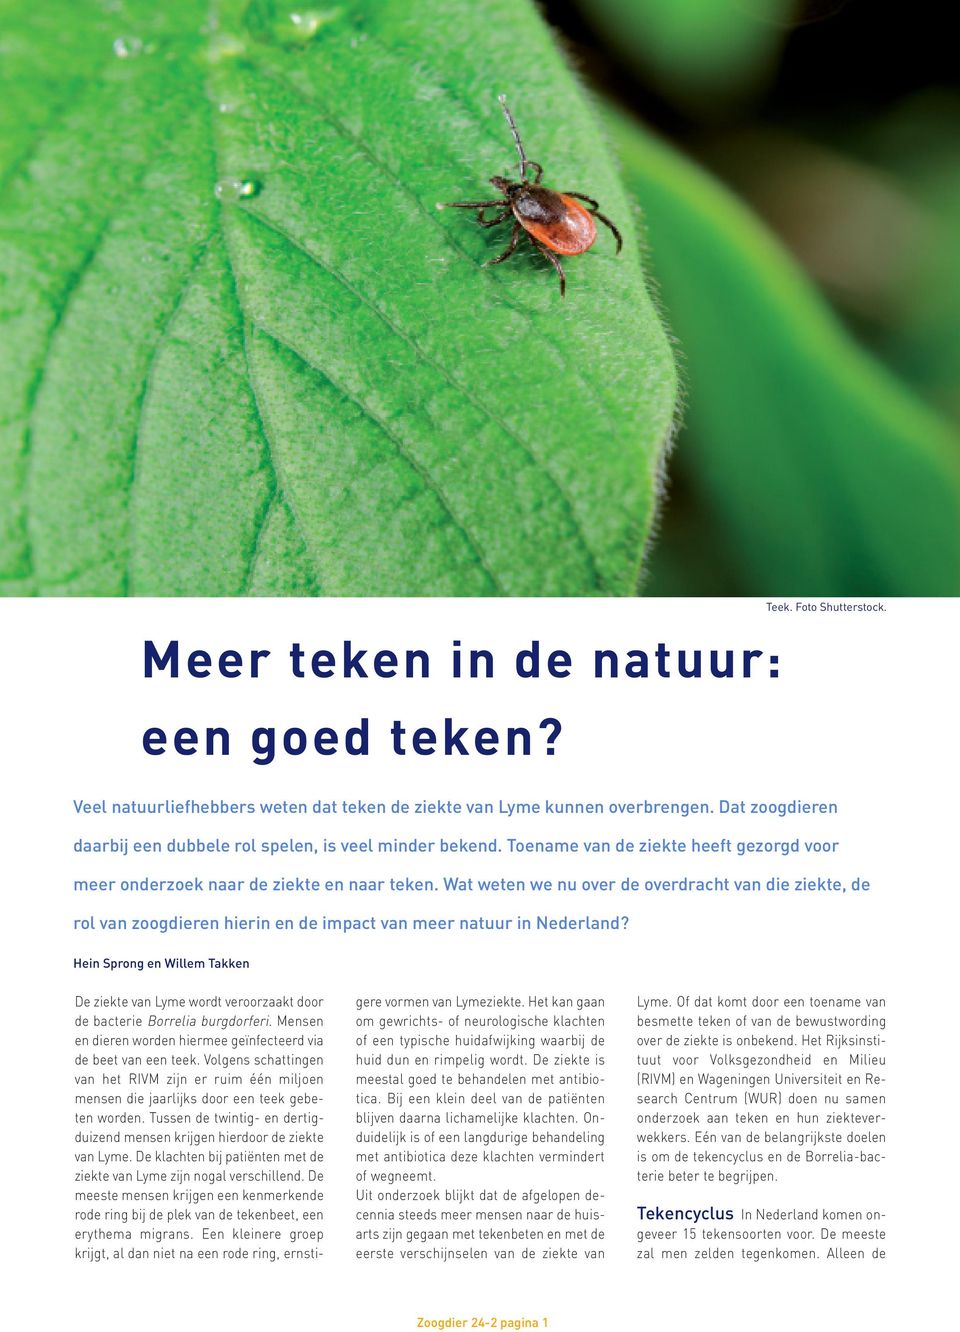 Wat weten we nu over de overdracht van die ziekte, de rol van zoogdieren hierin en de impact van meer natuur in Nederland?